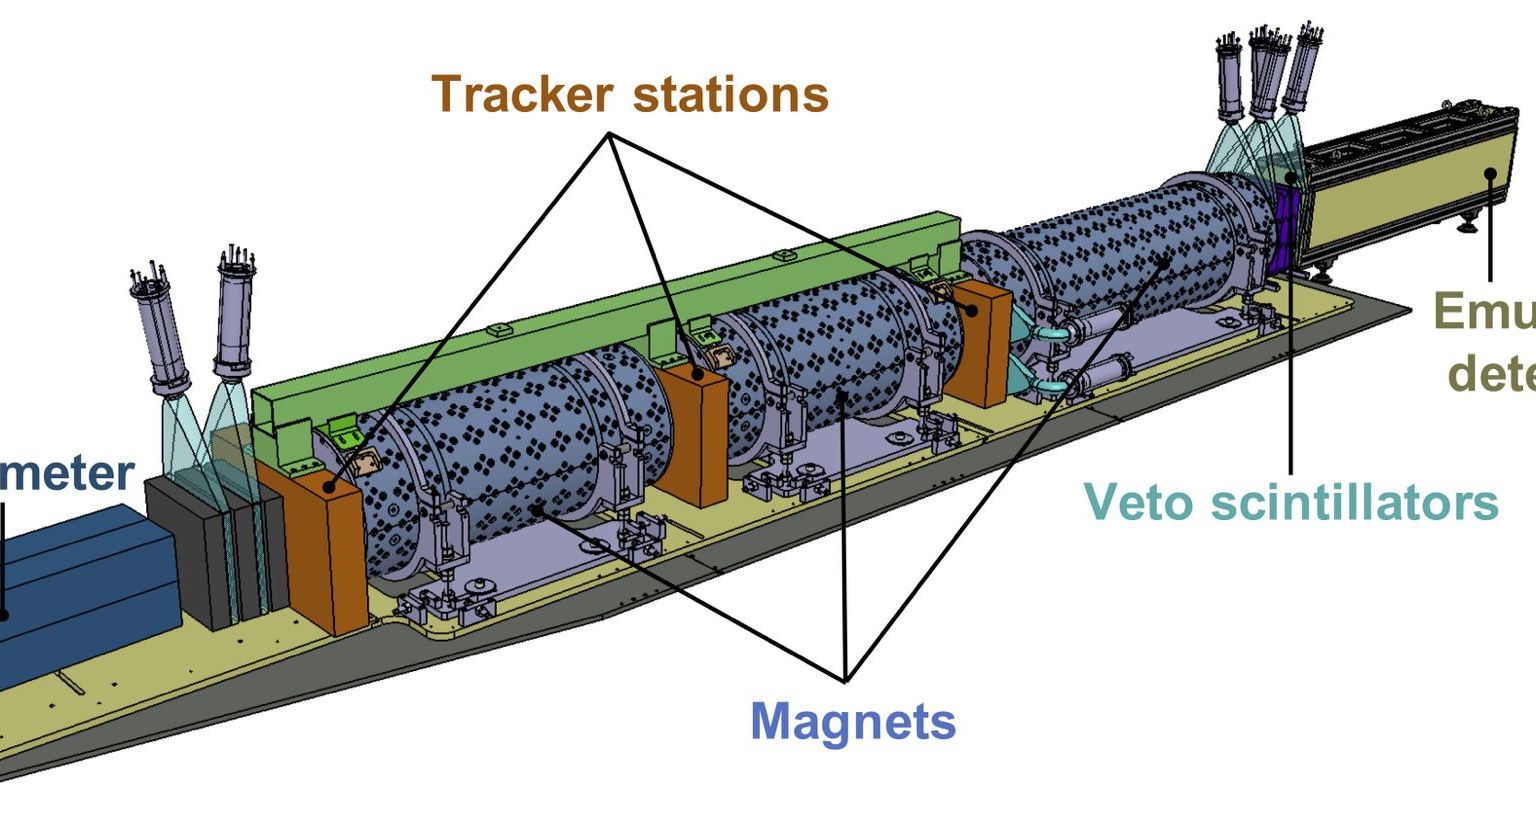 Ausgehend vom benachbarten ATLAS-Experiment treffen hochenergetische Teilchen (100 GeV bis 10 TeV) von links auf den FASER-Detektor. Vier „Veto“-Szintillatoren eliminieren die im Teilchenstrahl enthaltenen Myonen, da sie für das FASER-Experiment uninteressant sind. Wenn Teilchen anschliessend im ‚Zerfallsvolumen‘ (‚decay volume‘) zerfallen, können die Zerfallsprodukte in den drei Nachweisstationen (‚tracking stations‘) des Spektrometers nachgewiesen werden. Jede Nachweisstation besteht aus drei Schichten zum Nachweis geladener Teilchen. Ungeladene Teilchen (z.B. Photonen) werden im Kalorimeter am Ende des Detektors nachgewiesen. Die Bahnen der Zerfallsprodukte und ihre Eigenschaften können aus den Messdaten rekunstruiert  werden. Der Emulsionsdetektor (FASERν) am Anfang des Detektors weist  Wechselwirkungen von hochenergetischen Neutrinos nach. Anders als die Agenda des FASER-Hauptexperiments – neue Teilchen zu entdecken – wird FASERν die Häufigkeit von Wechselwirkungen von Neutrinos messen. Diese Teilchen sind bekannt und im Standardmodell der Teilchenphysik beschrieben, aber viele ihrer Eigenschaften sind noch nicht bekannt.